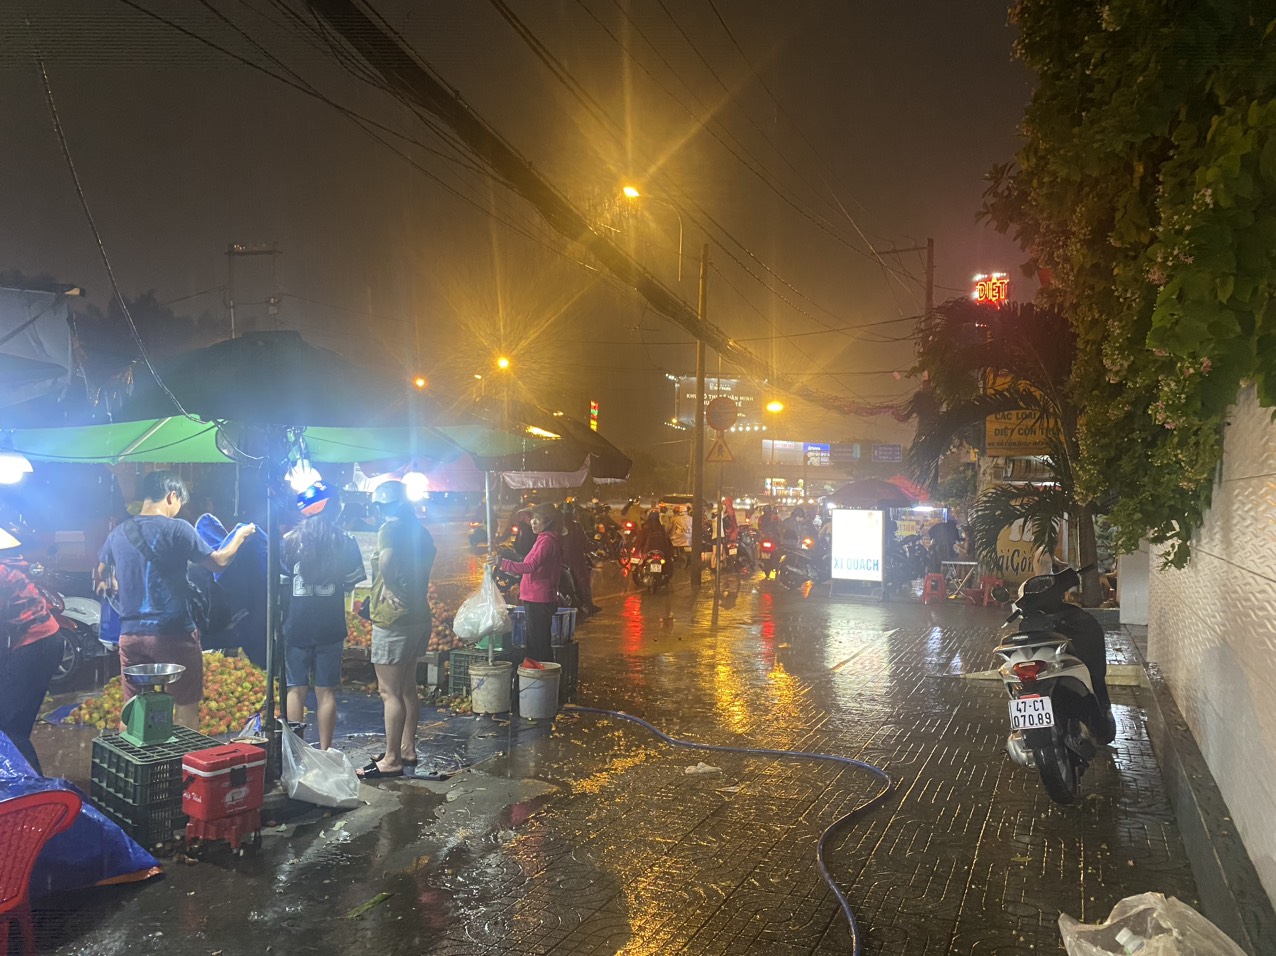 TP.HCM mưa bất chợt một số nơi, nhiều người chưa kịp phản ứng - Hình 3